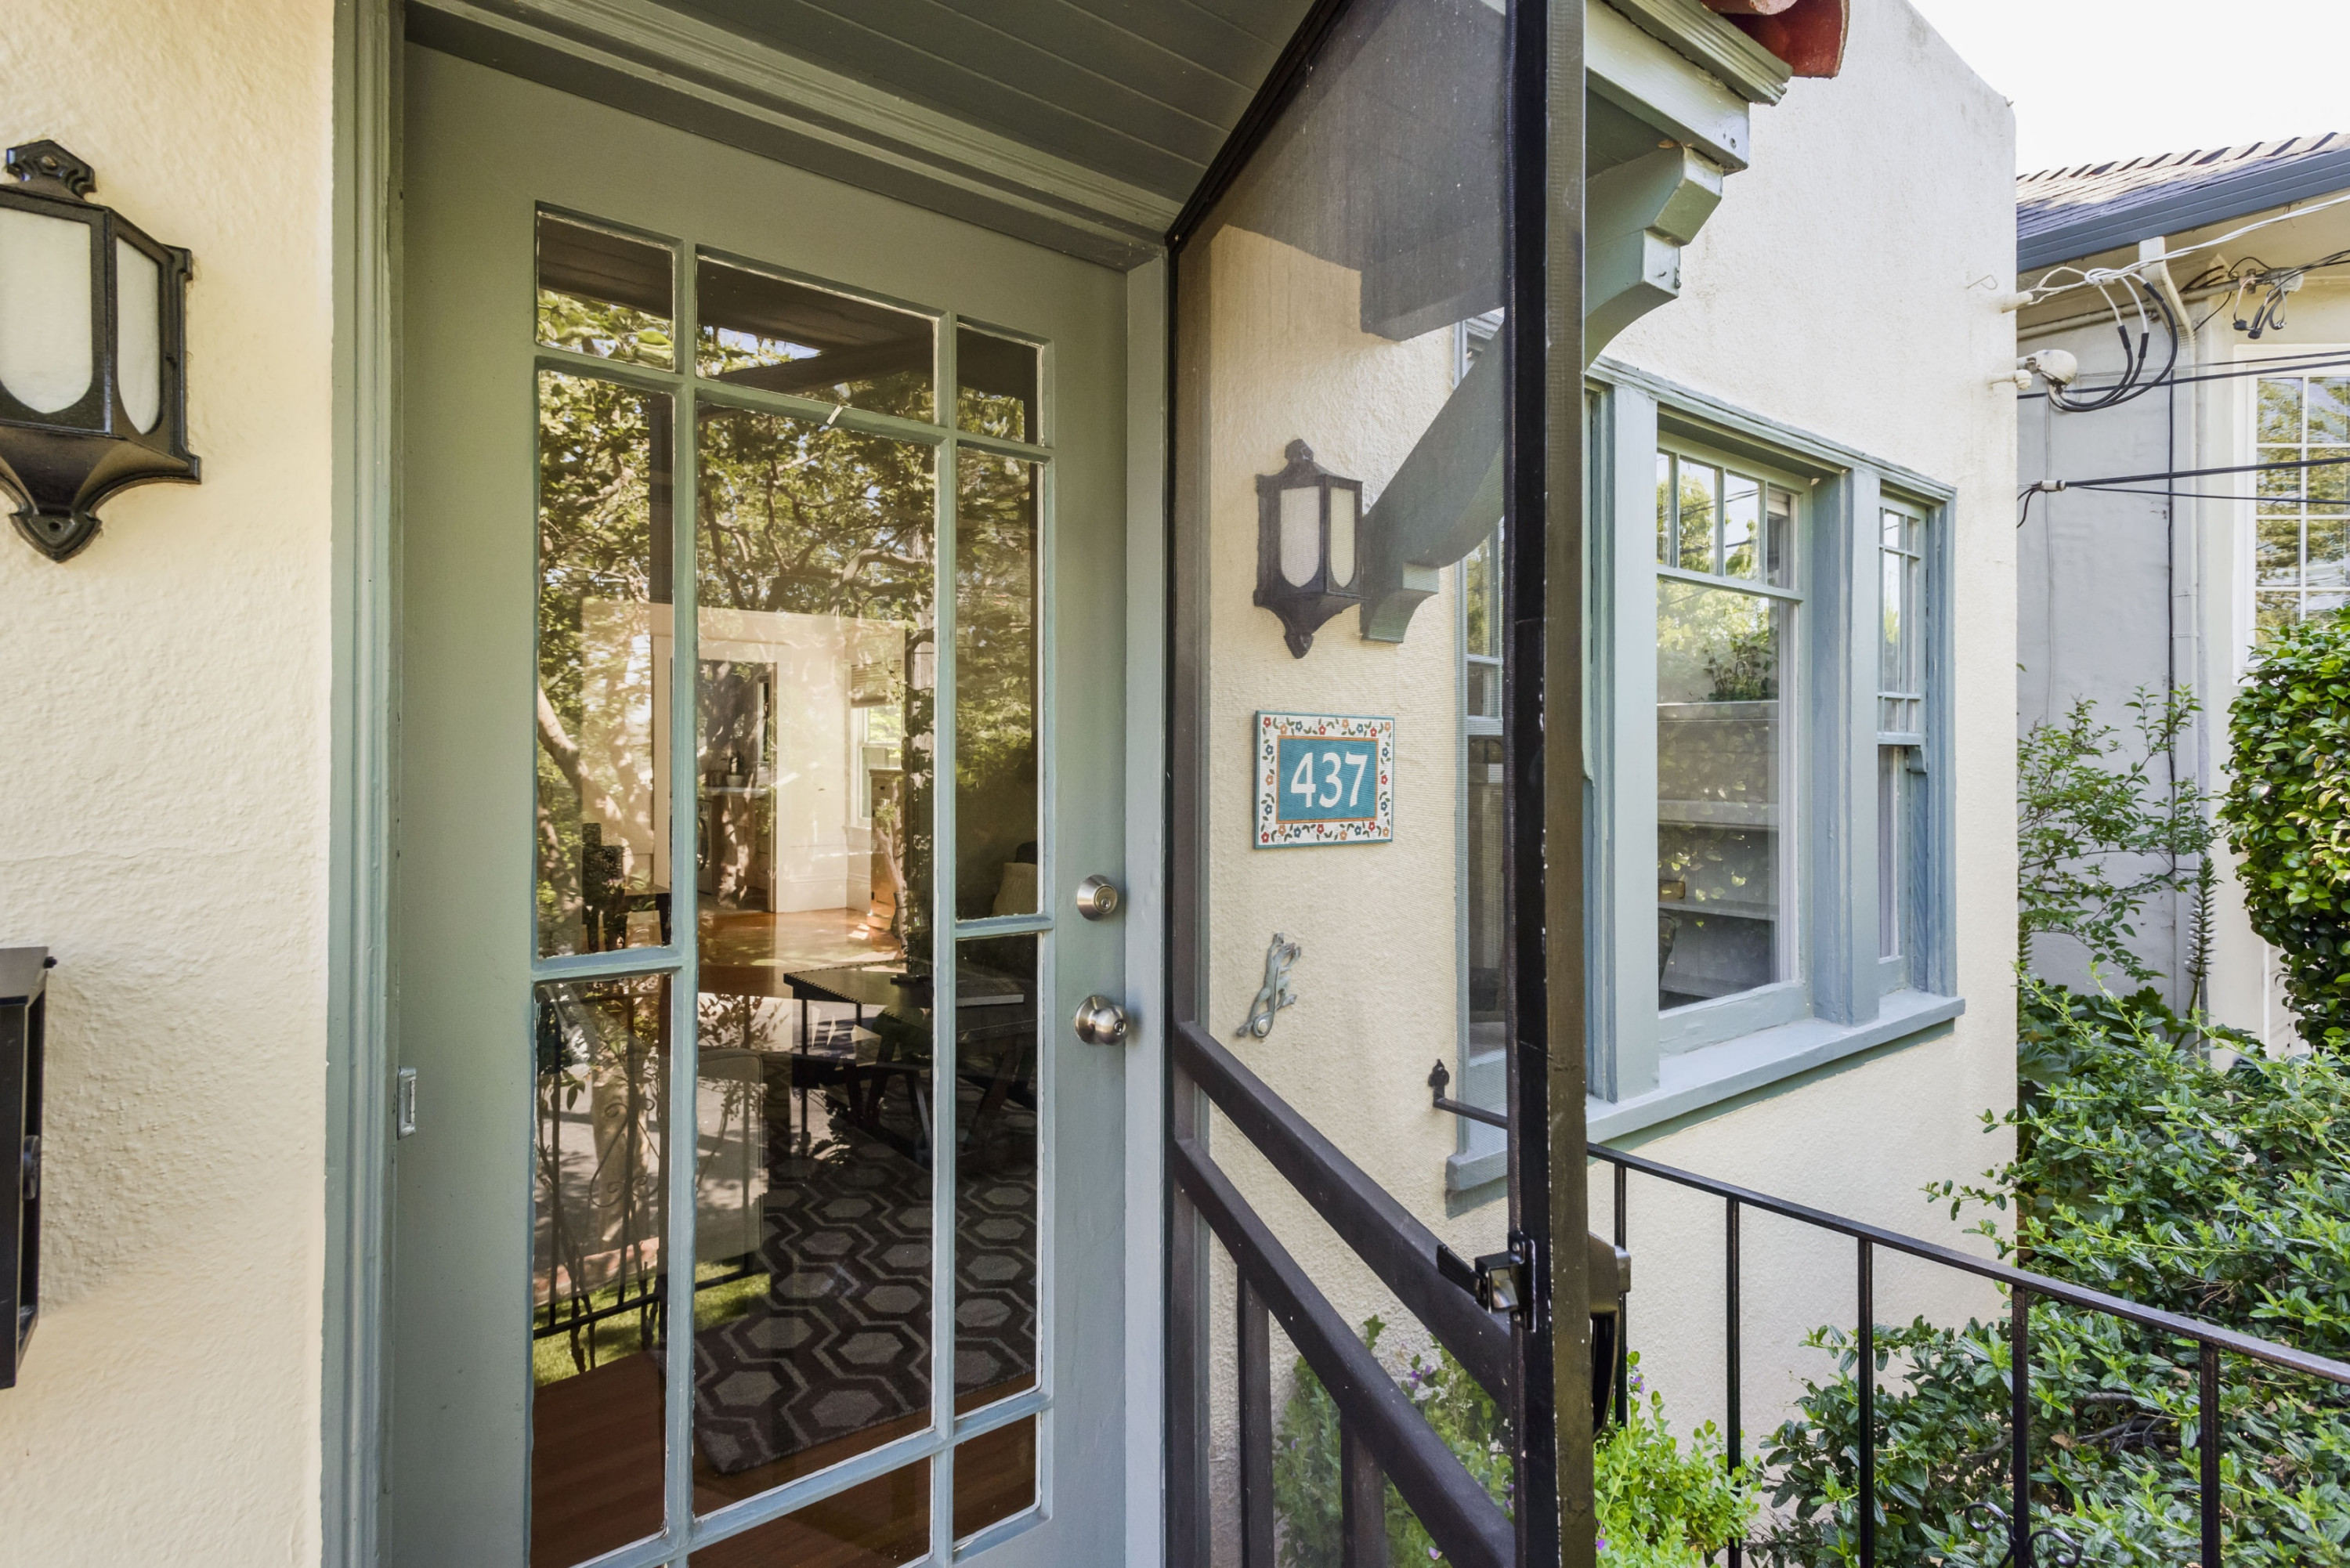 437 Wisnom Avenue Glass Front Door in Eastern Addition Neighborhood in San Mateo.